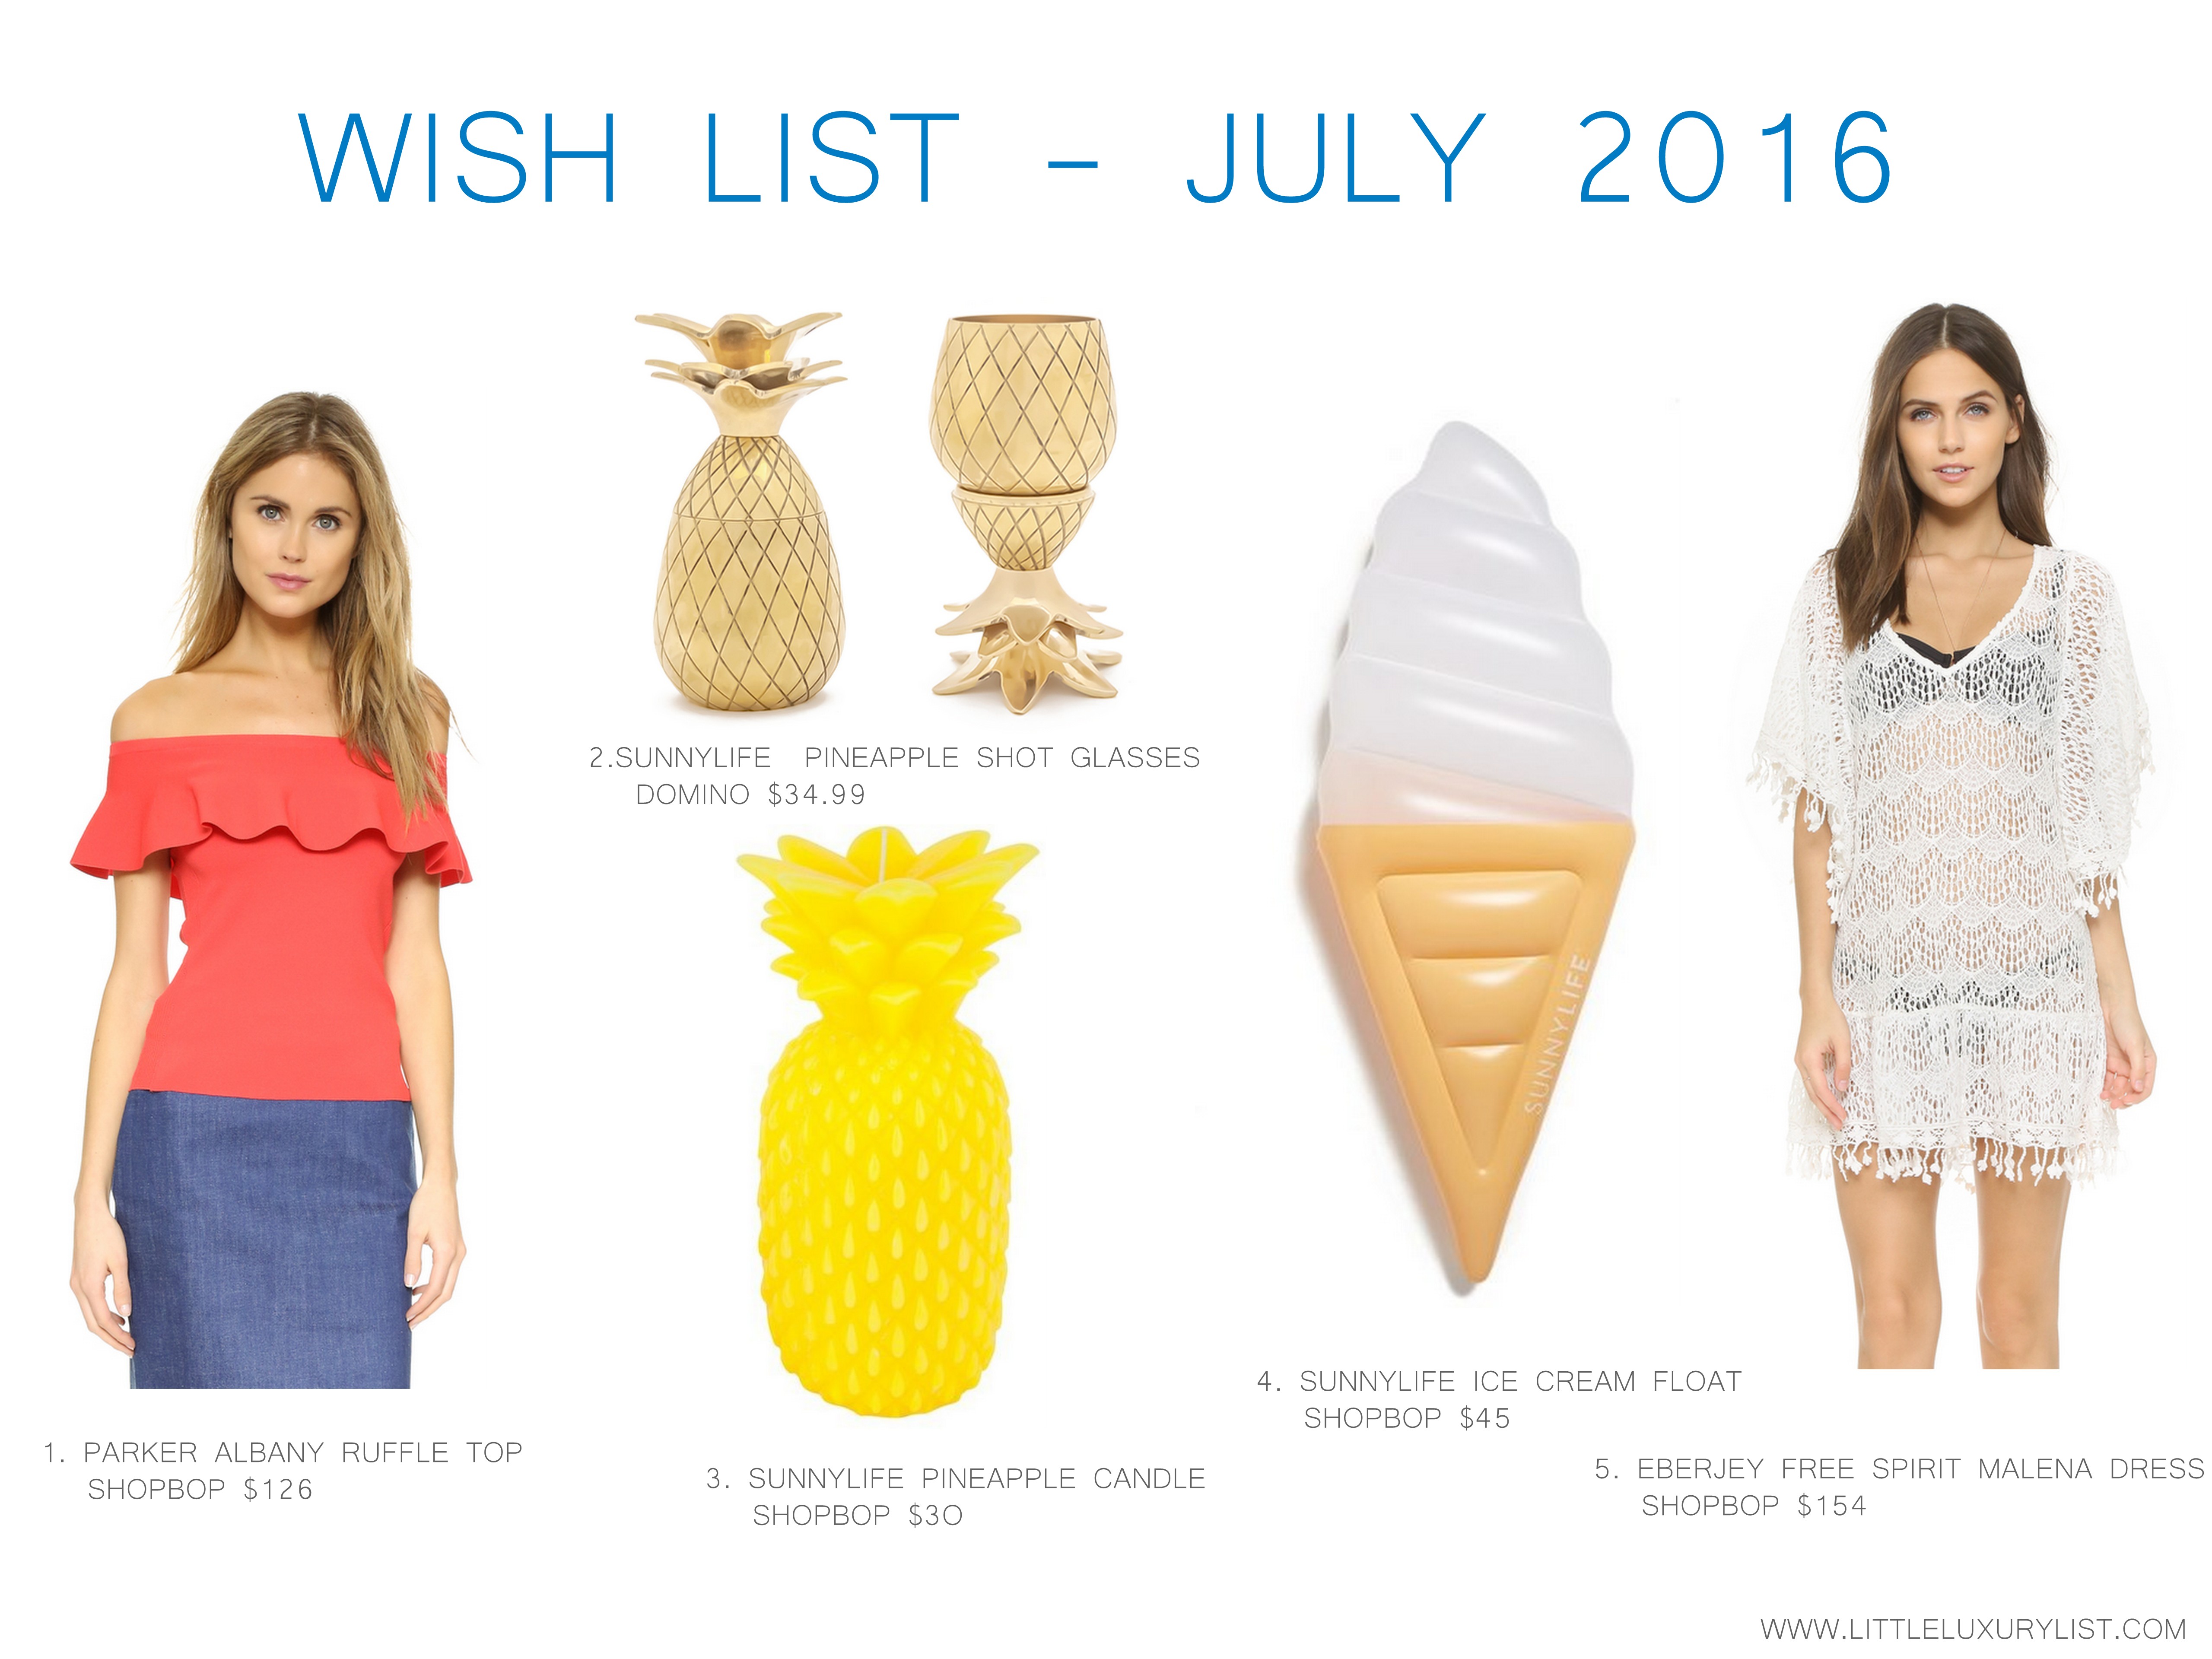 Wish list - July 2016 by little luxury list